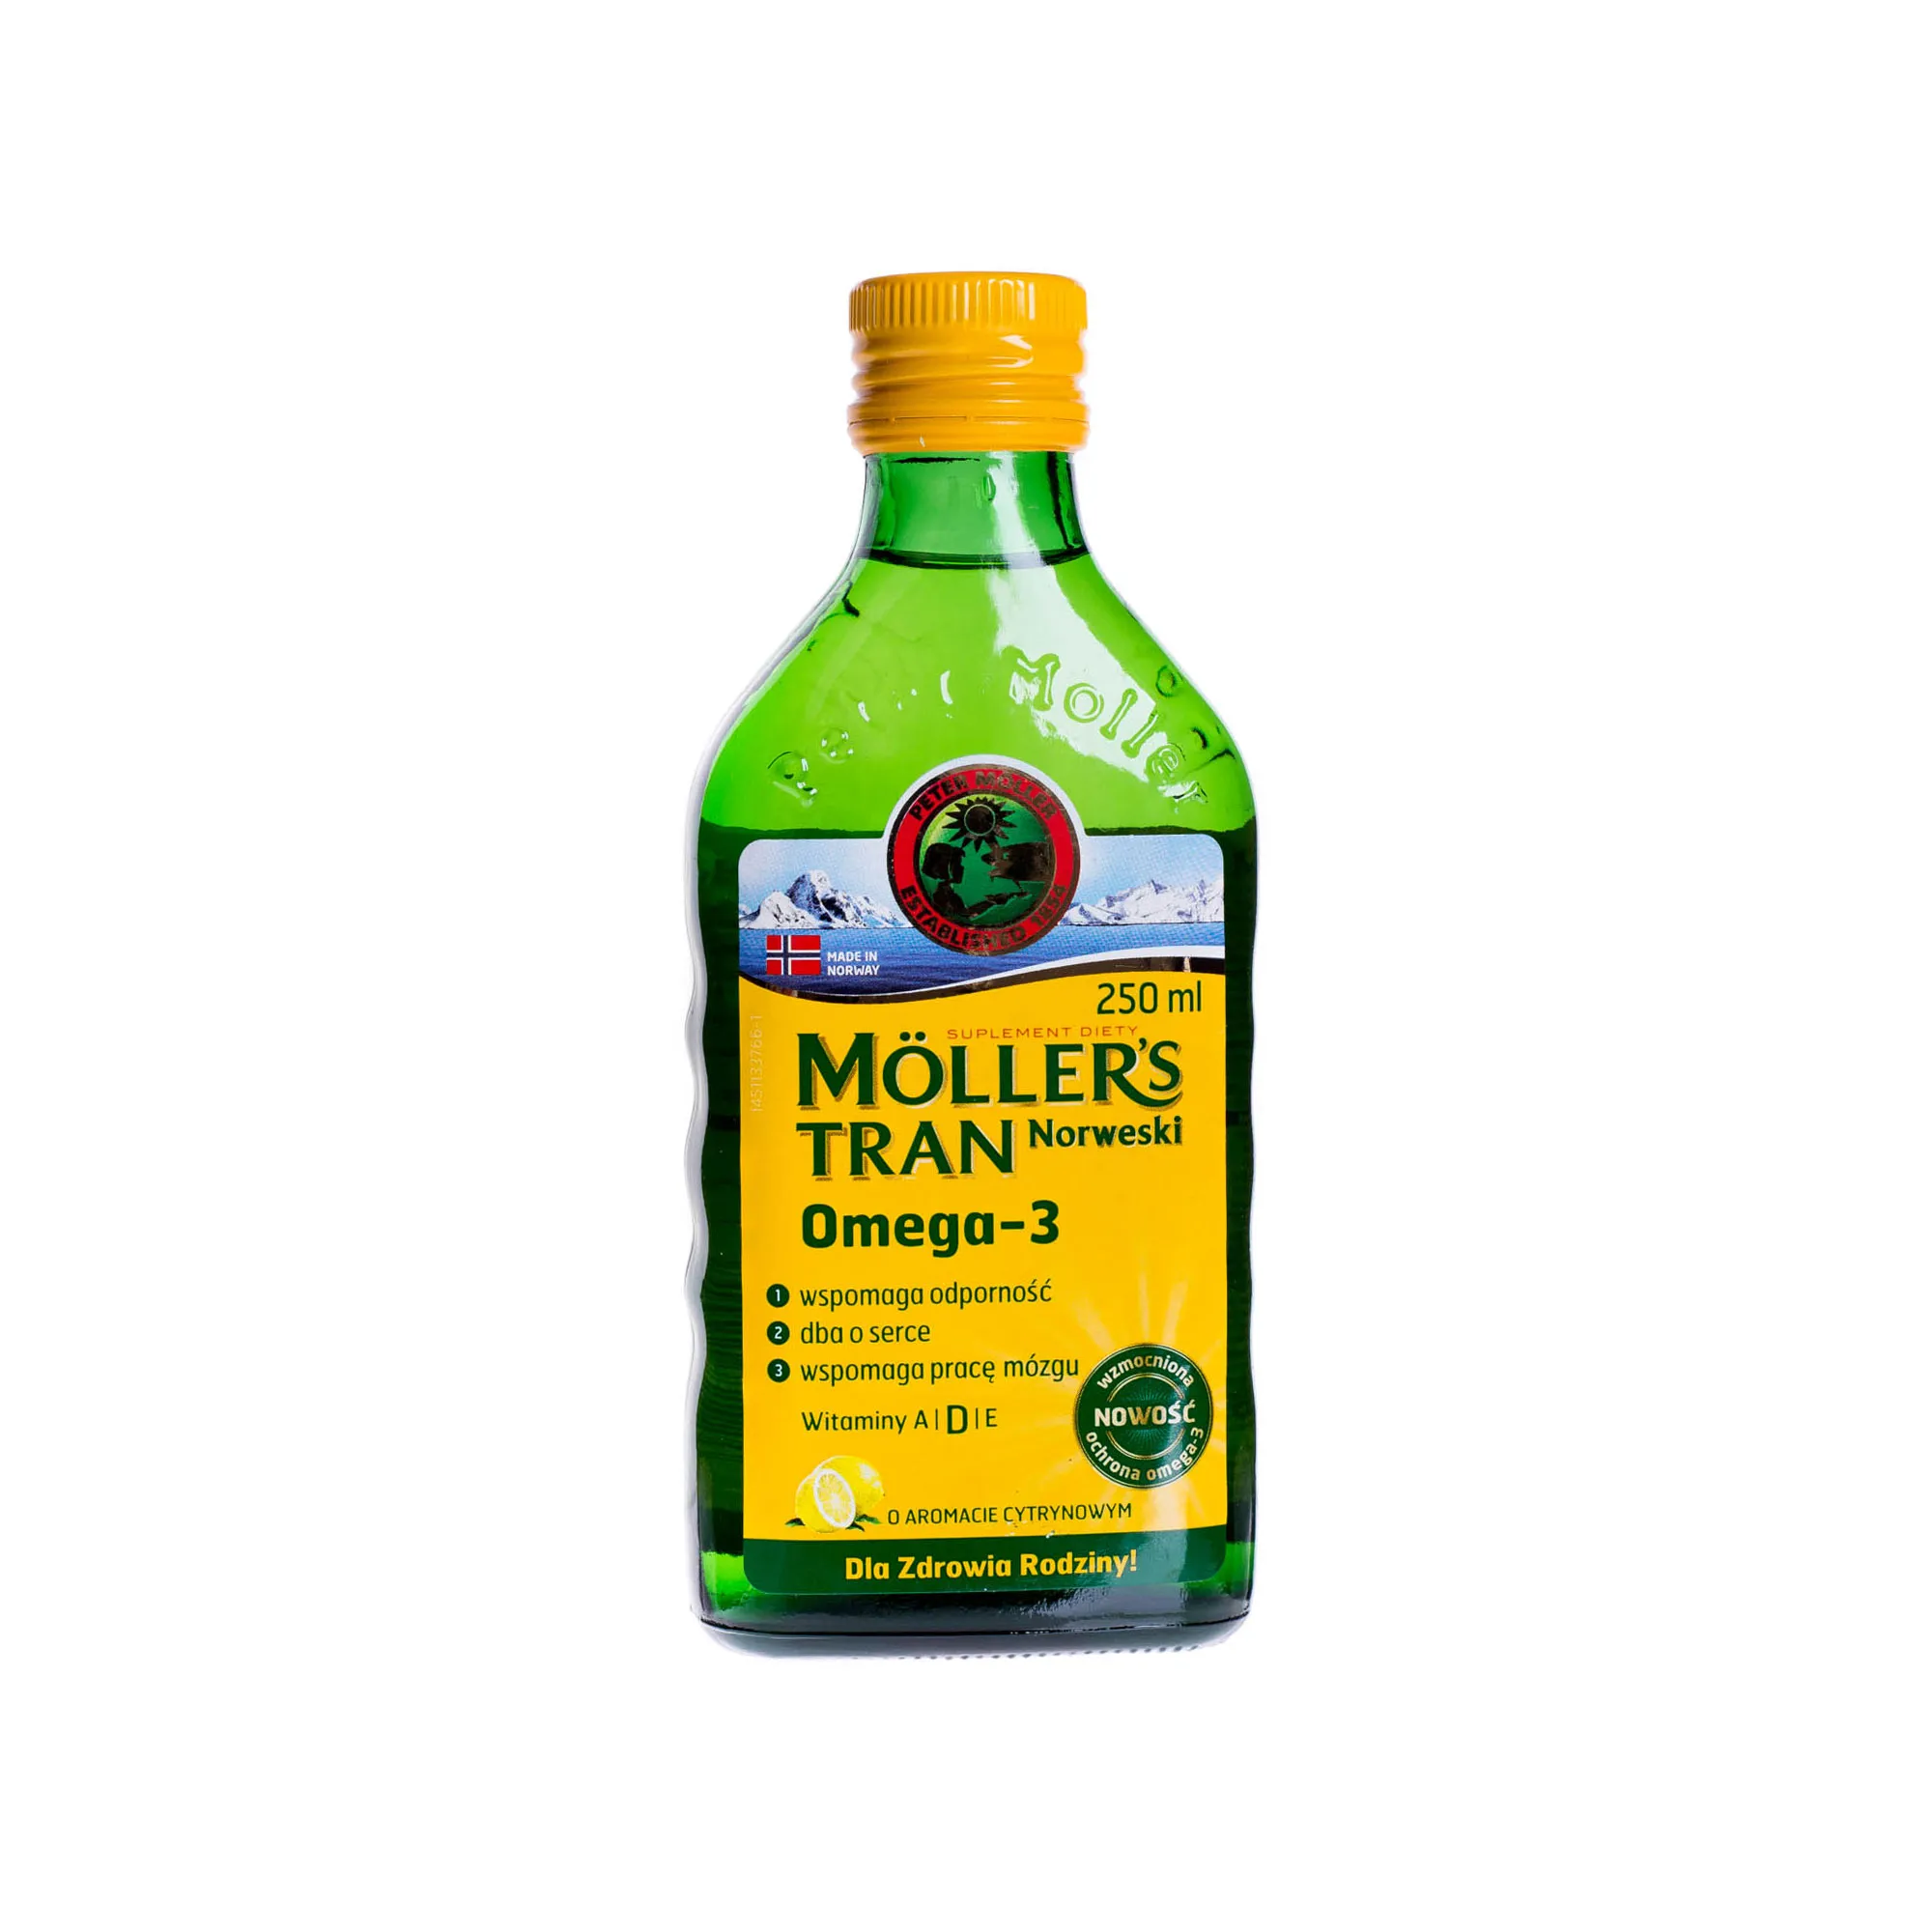 Moller's tran Norweski Omega-3, aromat cytrynowy, 250 ml